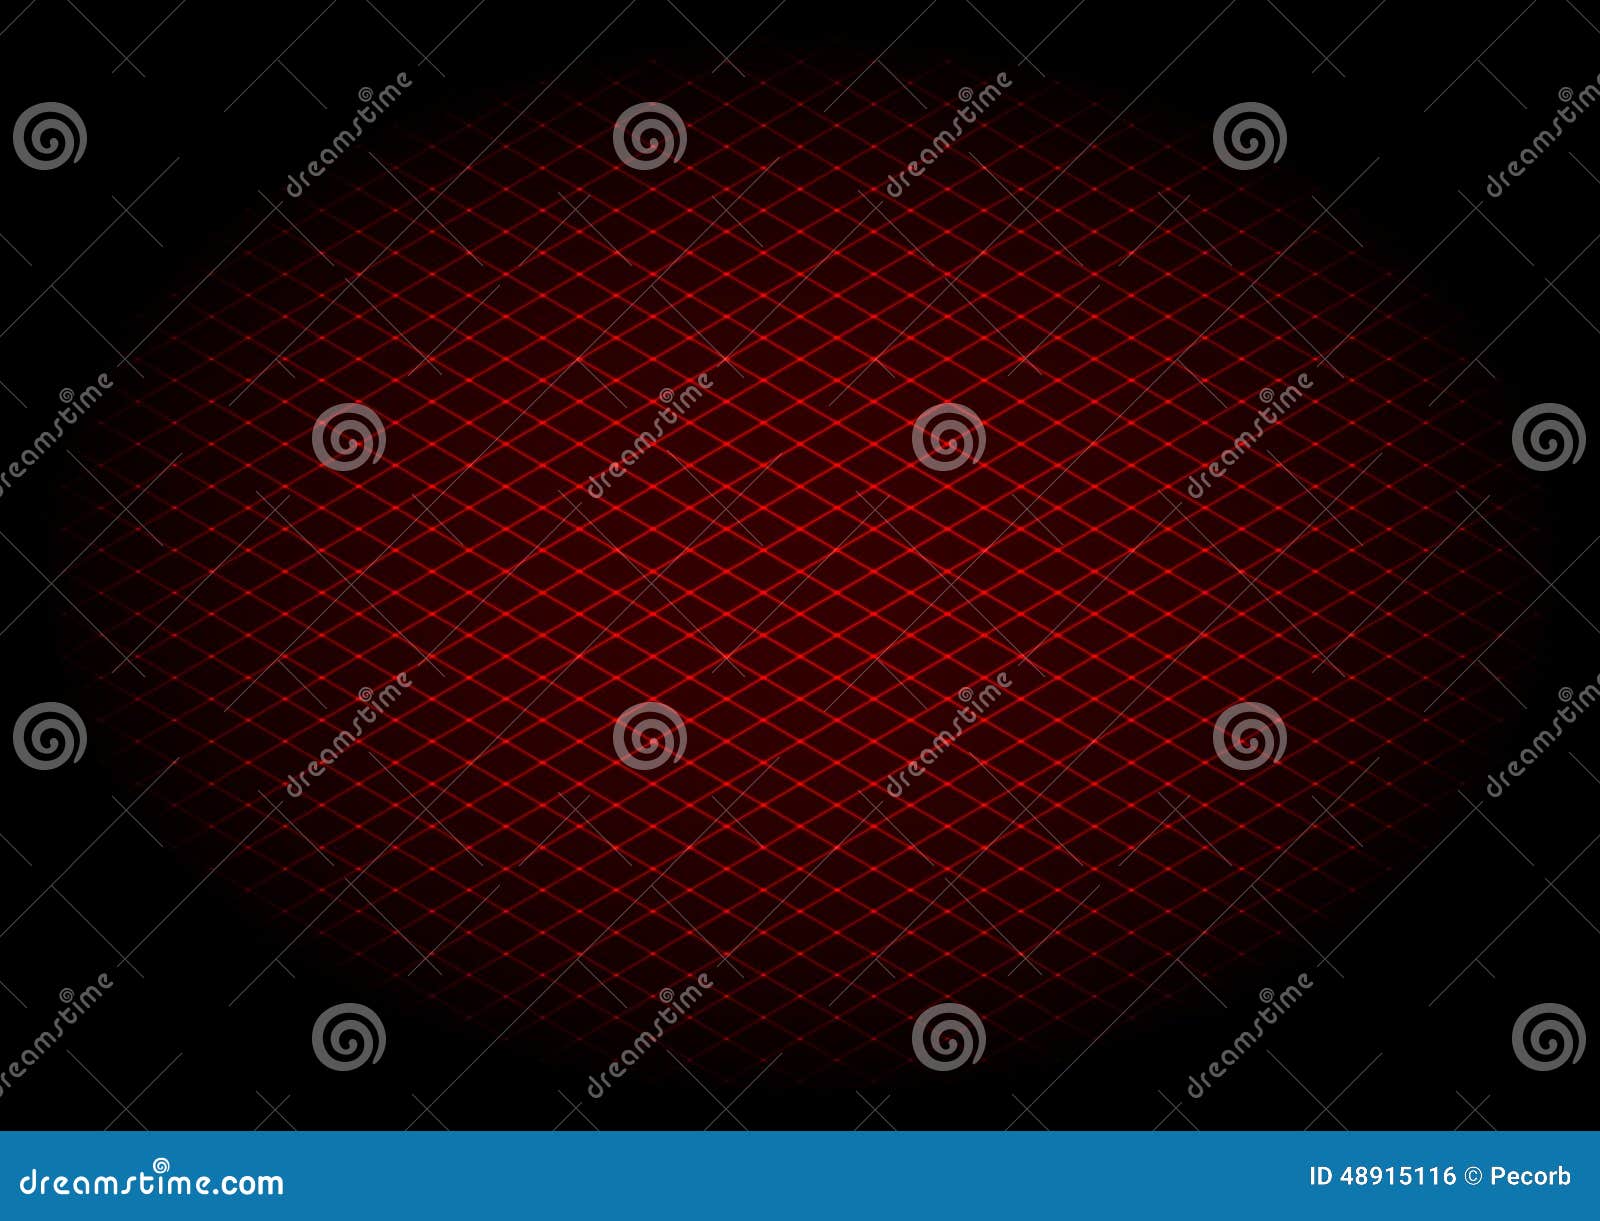 red laser grid diagonal in elipse